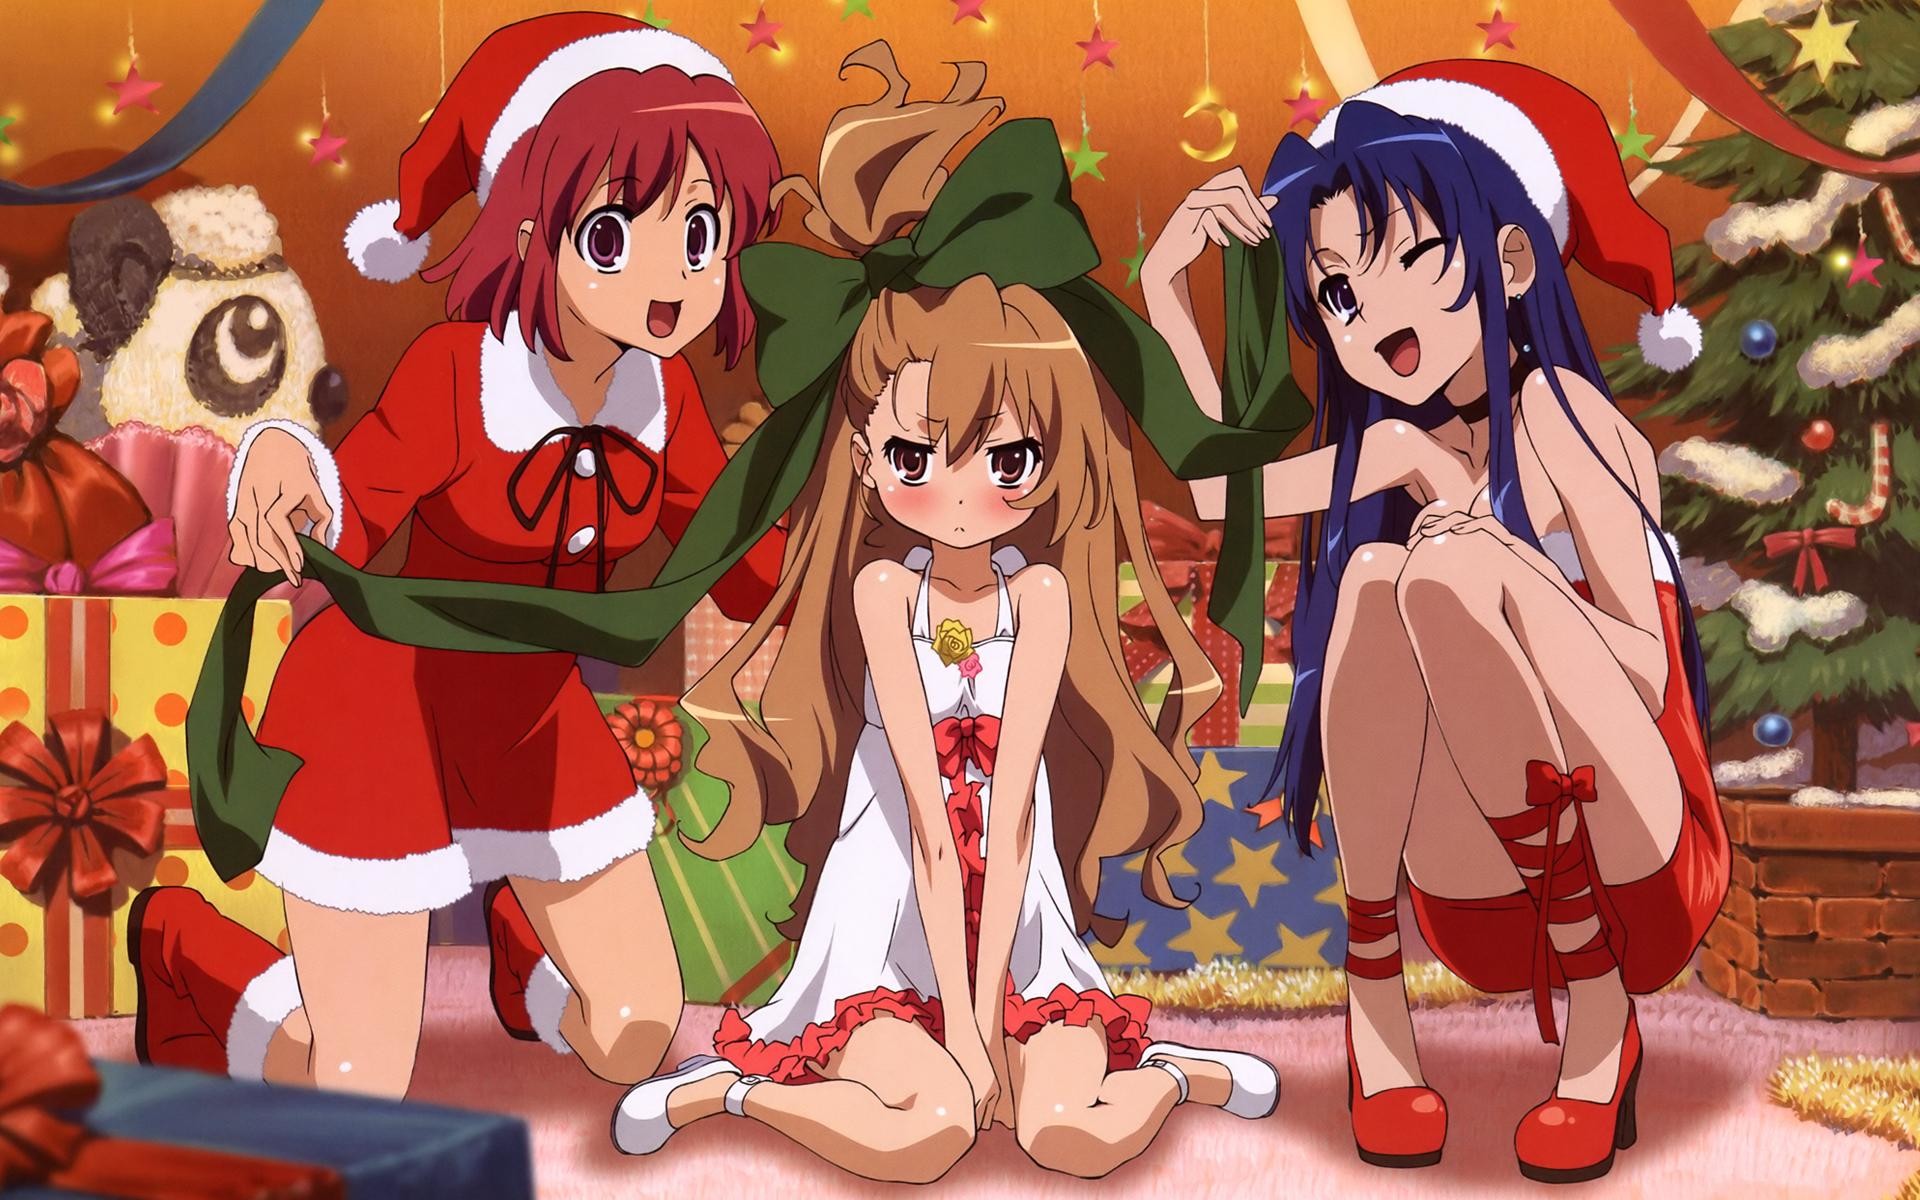 Anime Nichijou Christmas Special Episode GIF | GIFDB.com